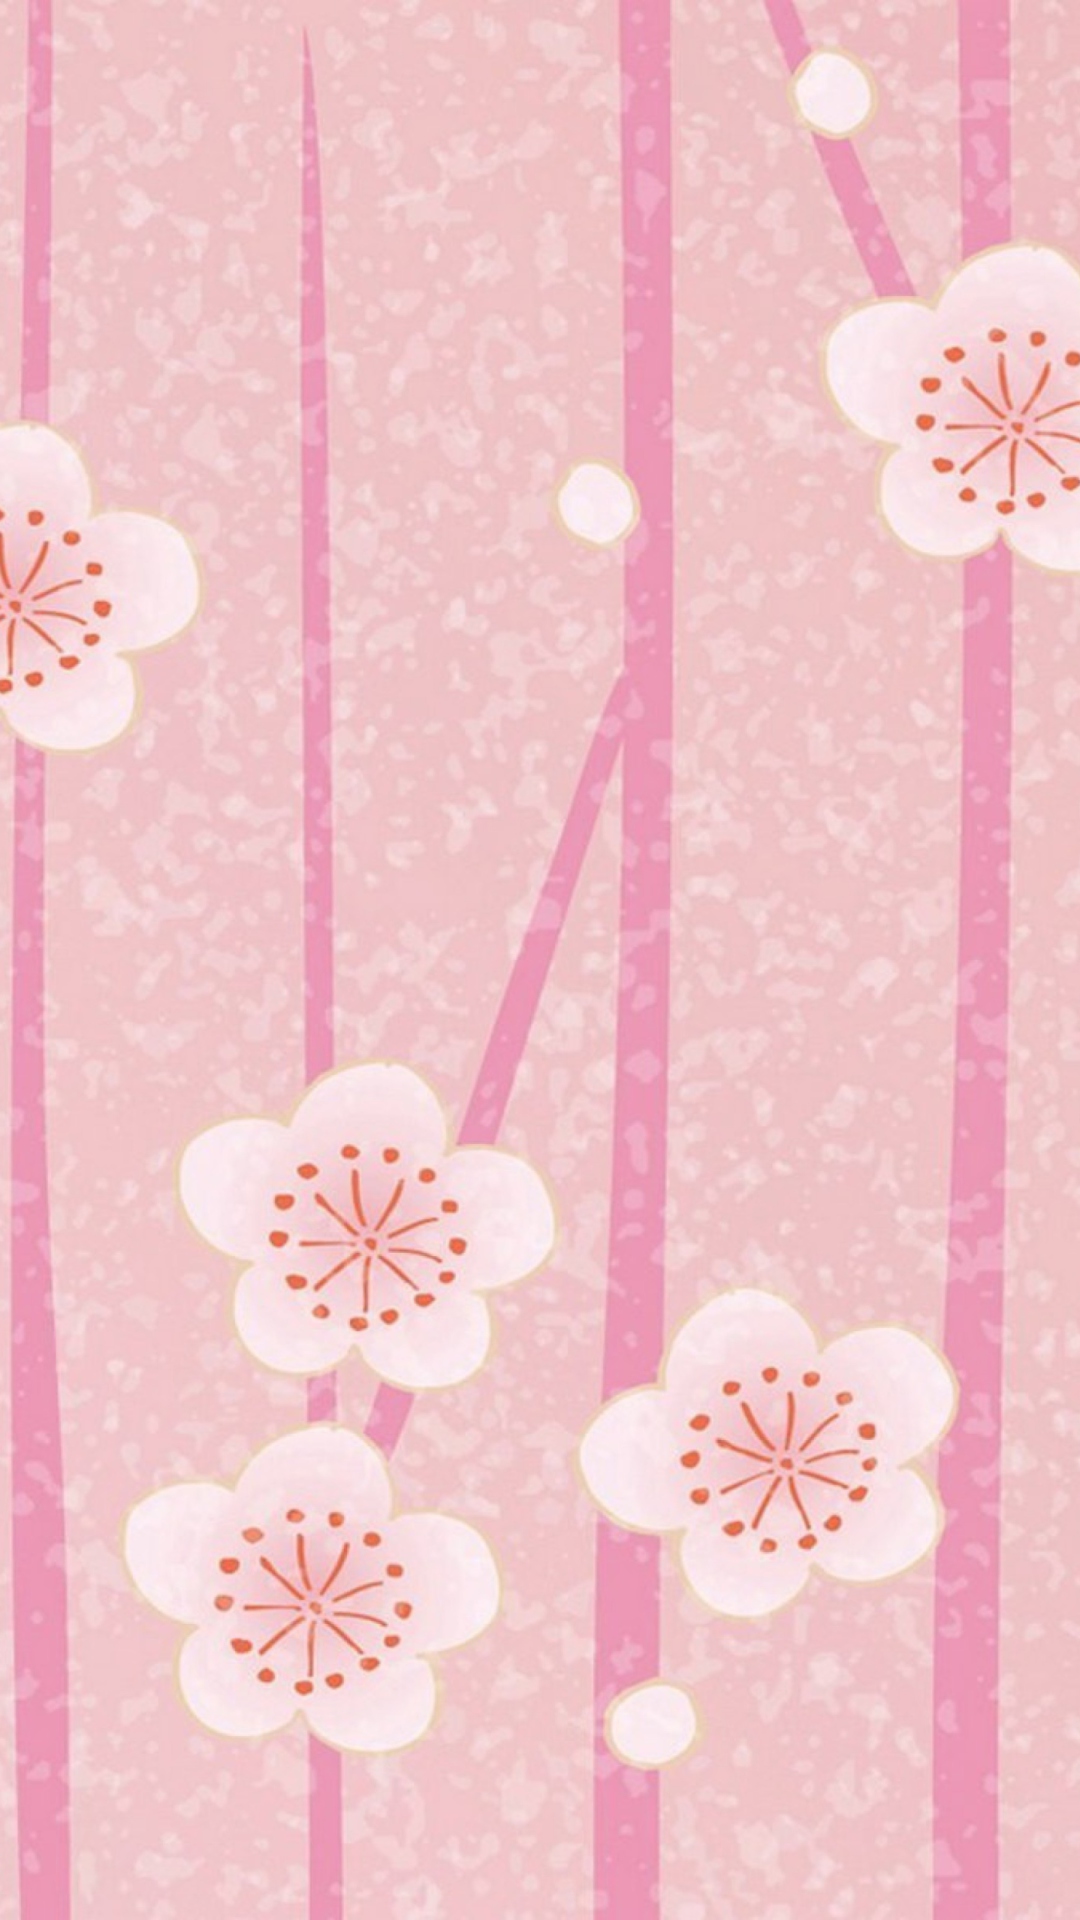 Das Pink Flowers Wallpaper Wallpaper 1080x1920